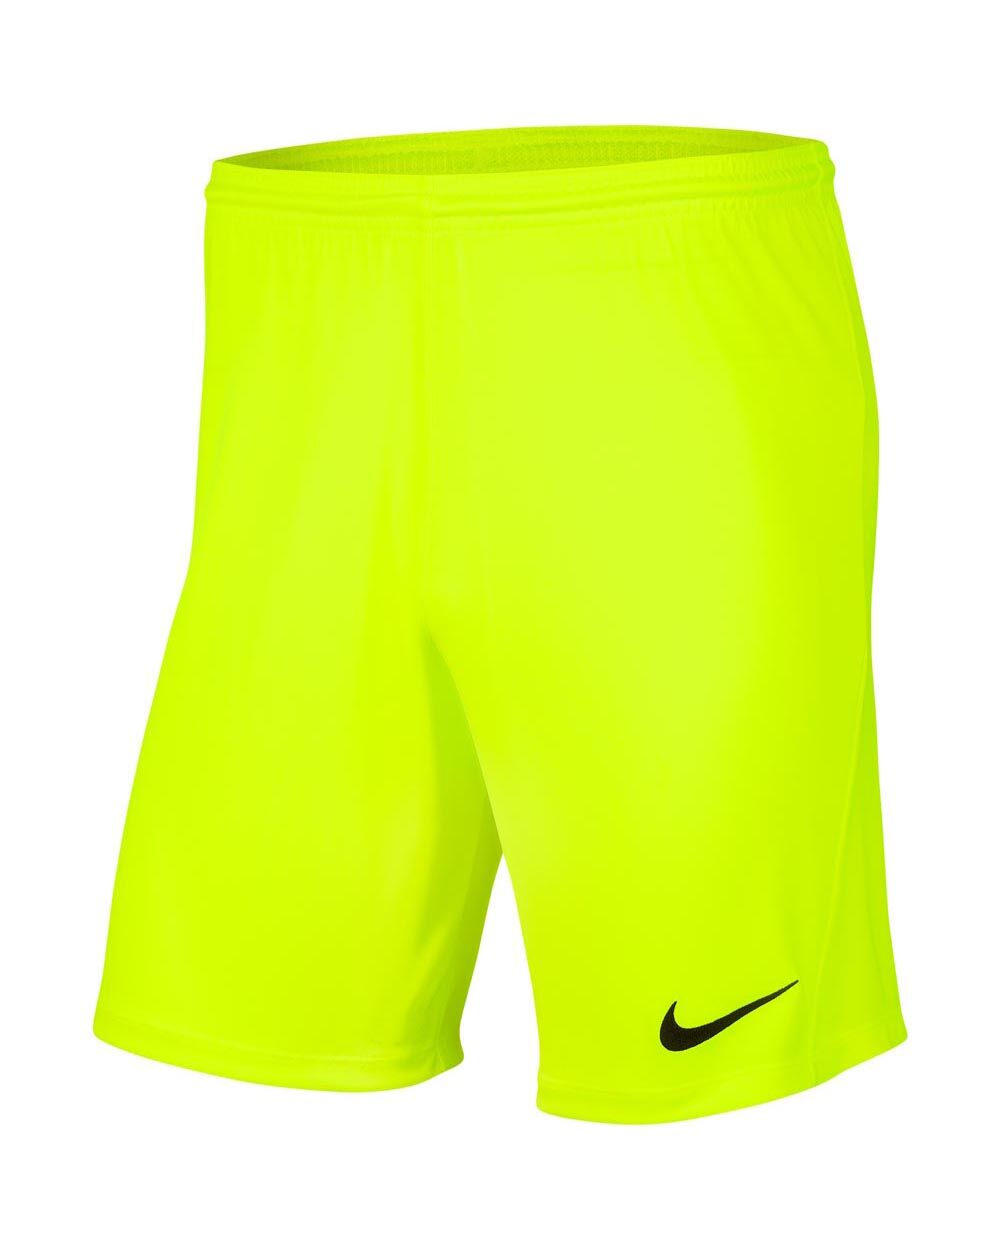 Nike Short Park III Giallo Fluorescente per Bambino BV6865-702 S